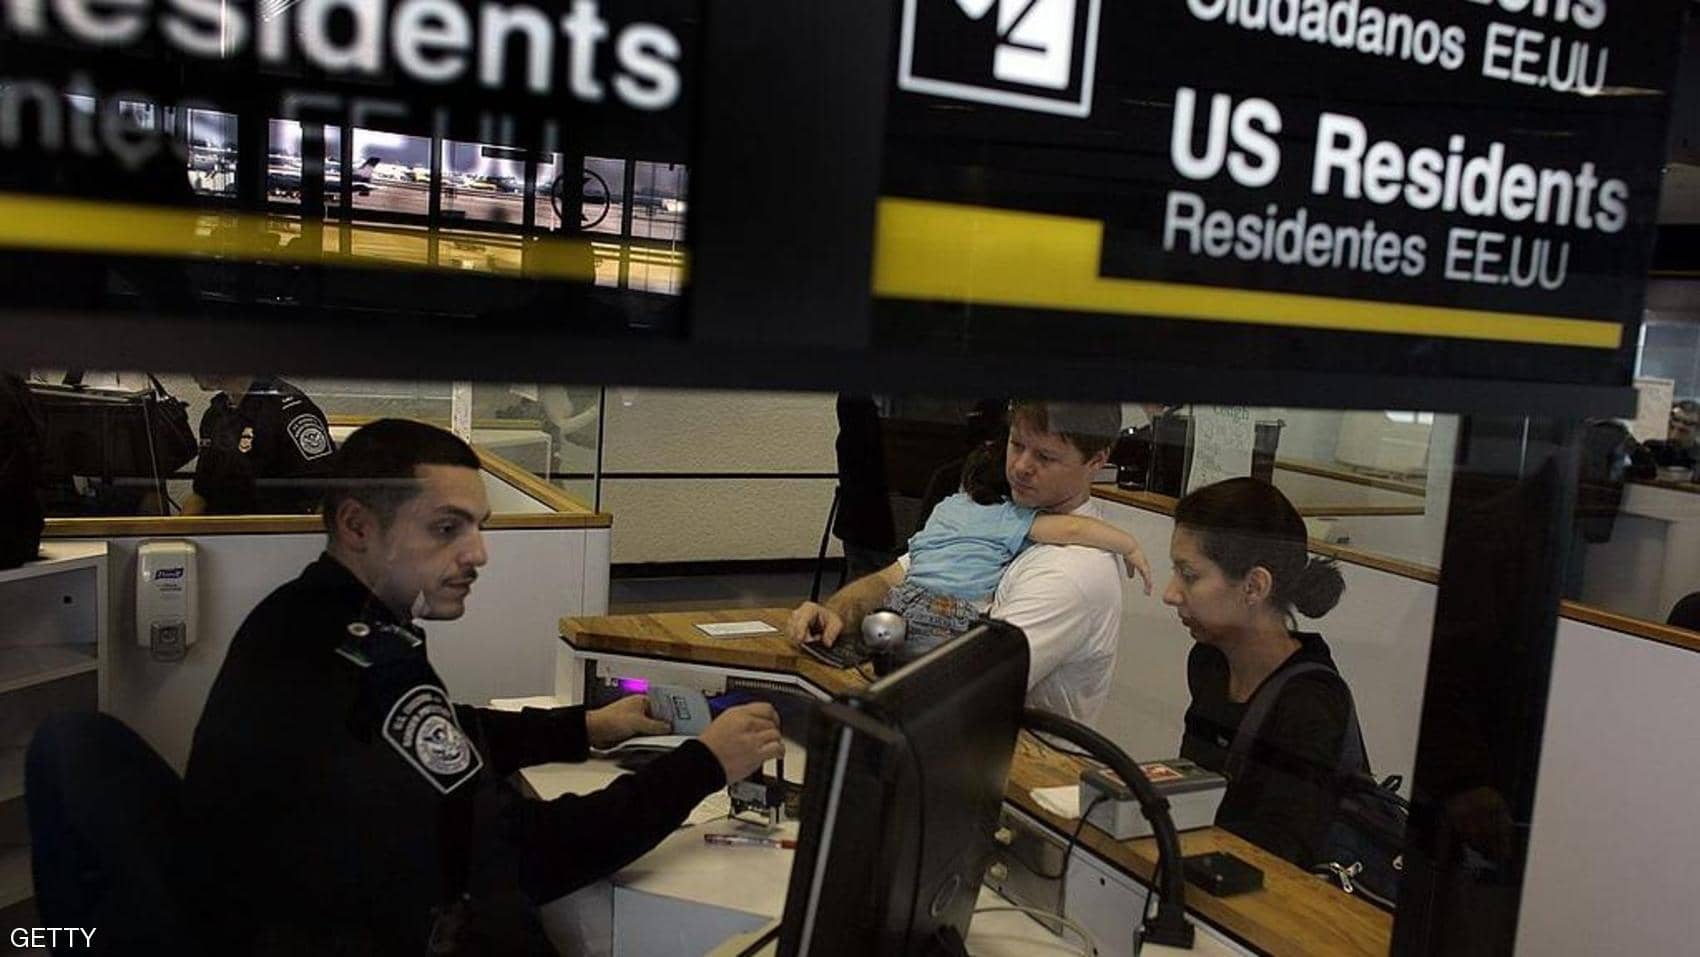 تأخر آلاف المسافرين بسبب عطل بالأنظمة في مطارات أميركية